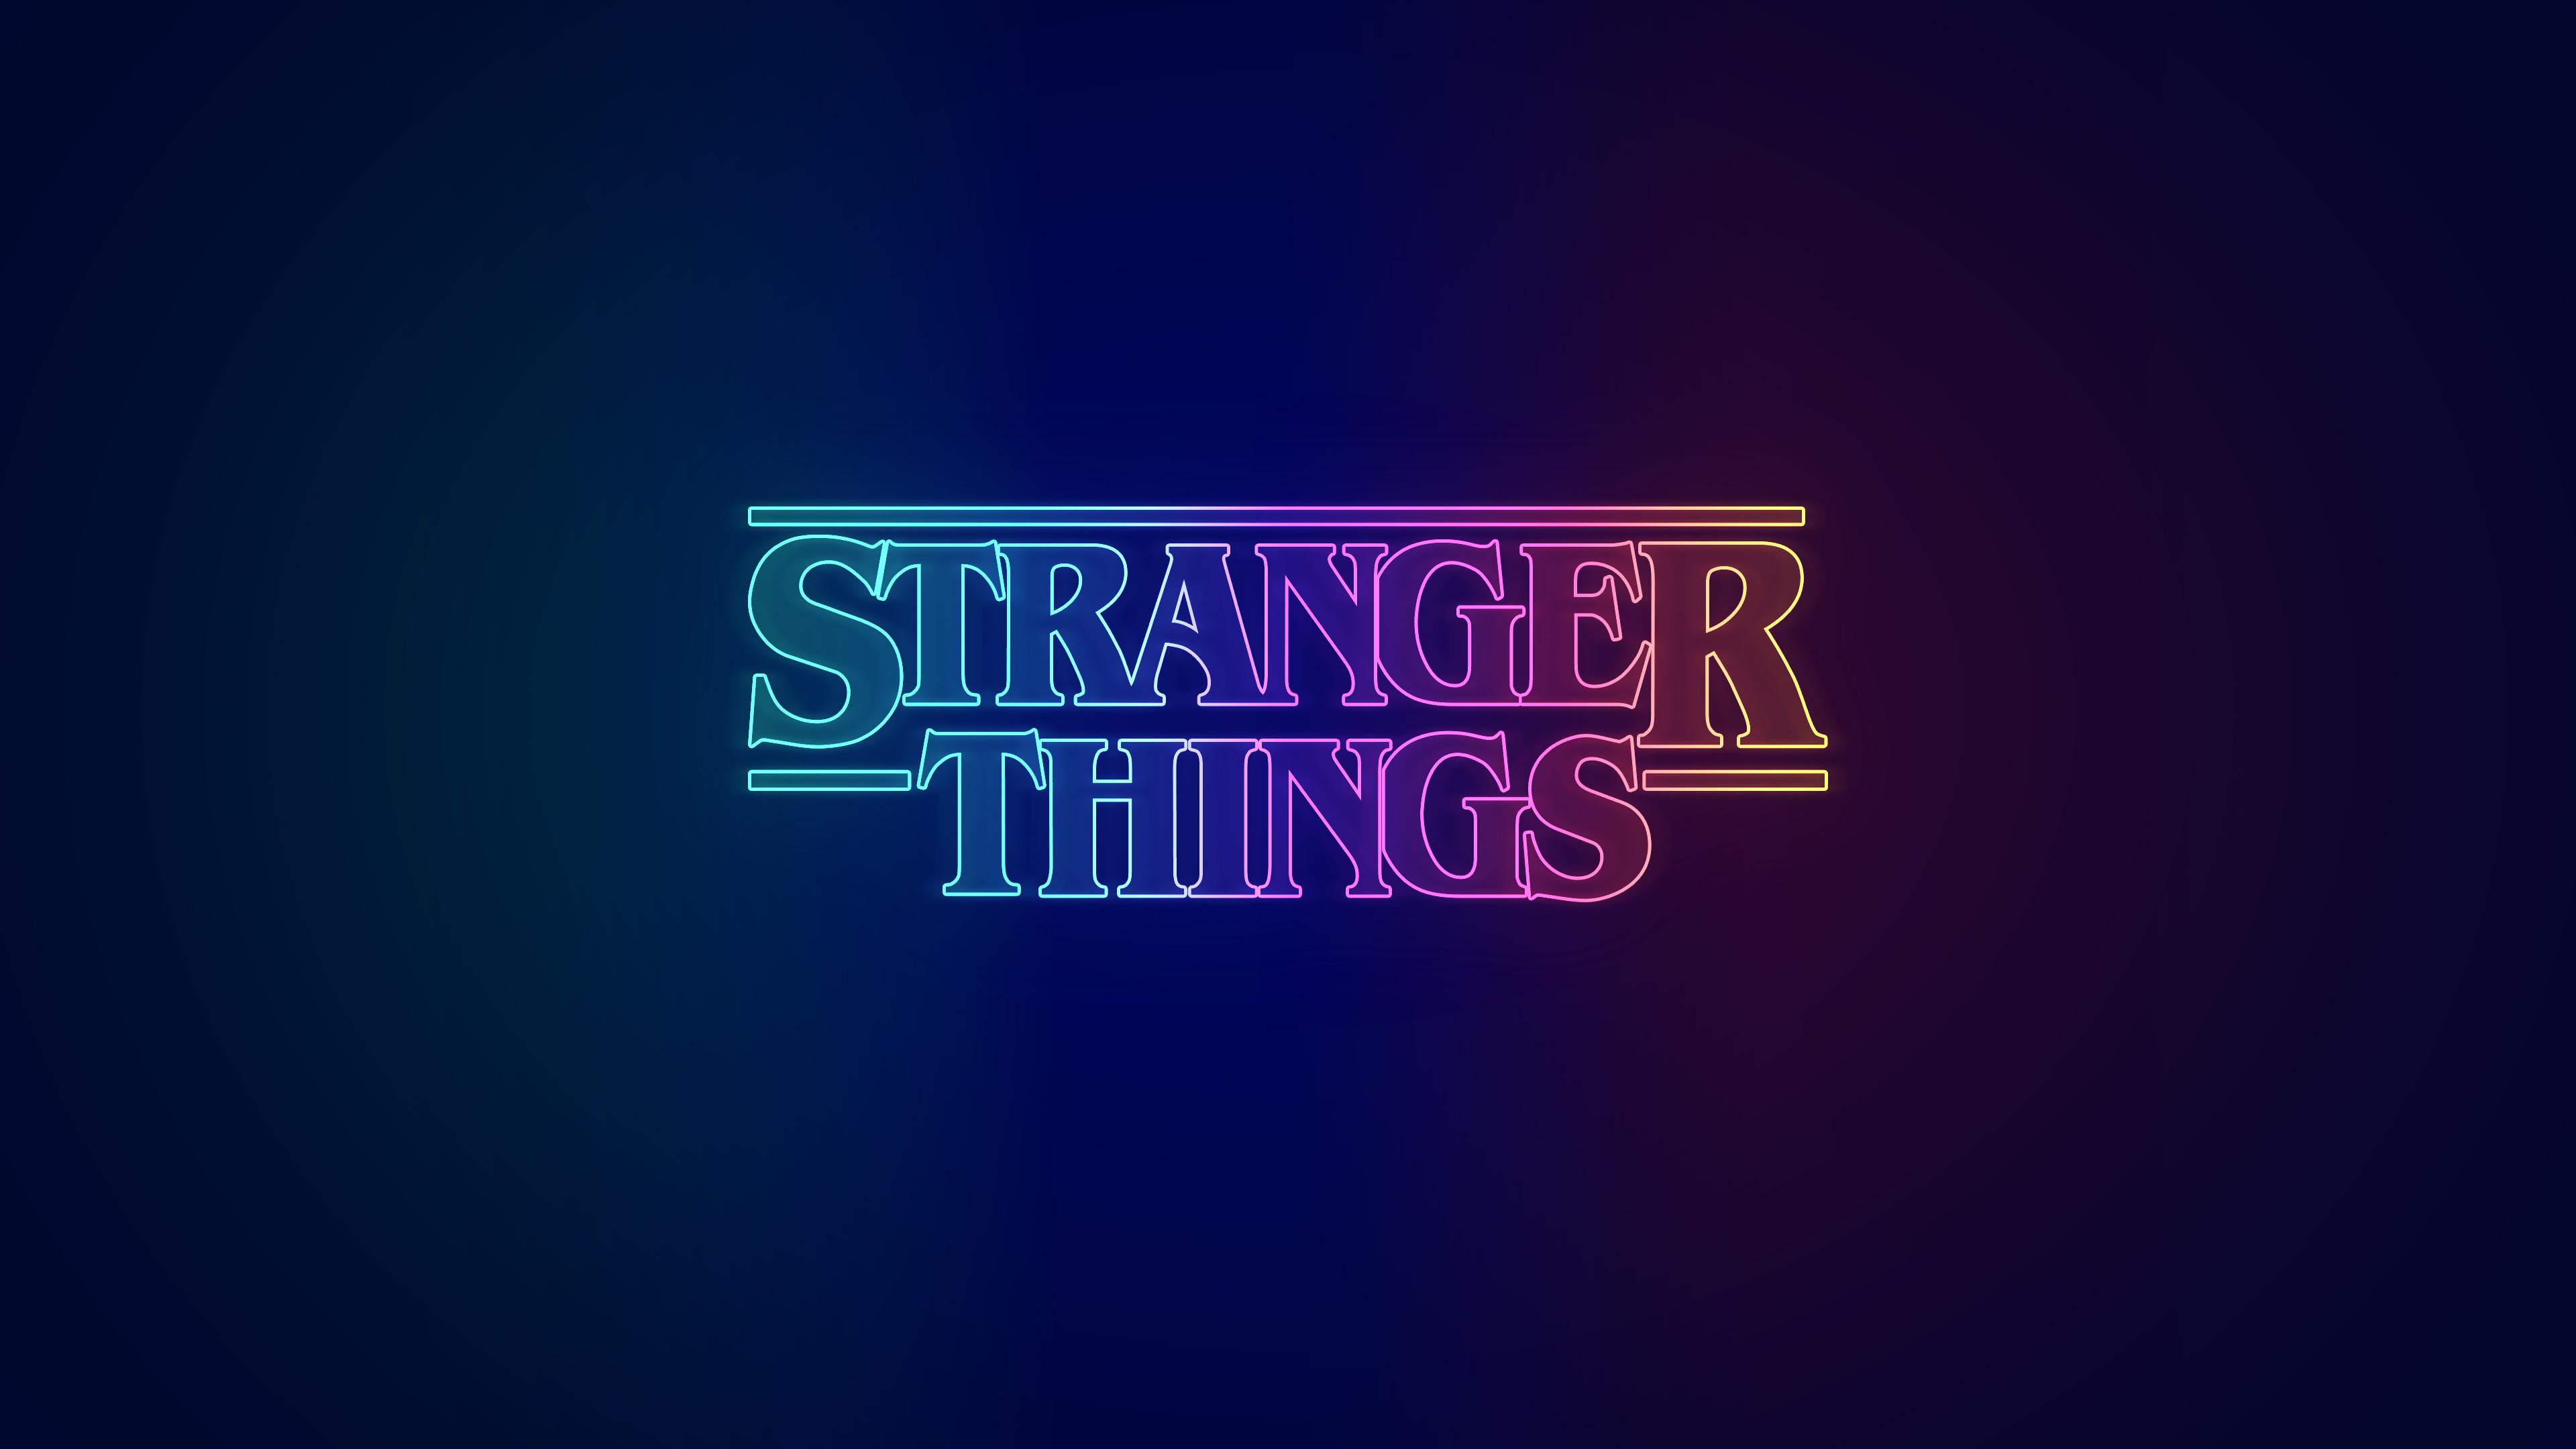 Stranger Things 3 For Chromebook aesthetic grunge chromebook HD wallpaper   Pxfuel